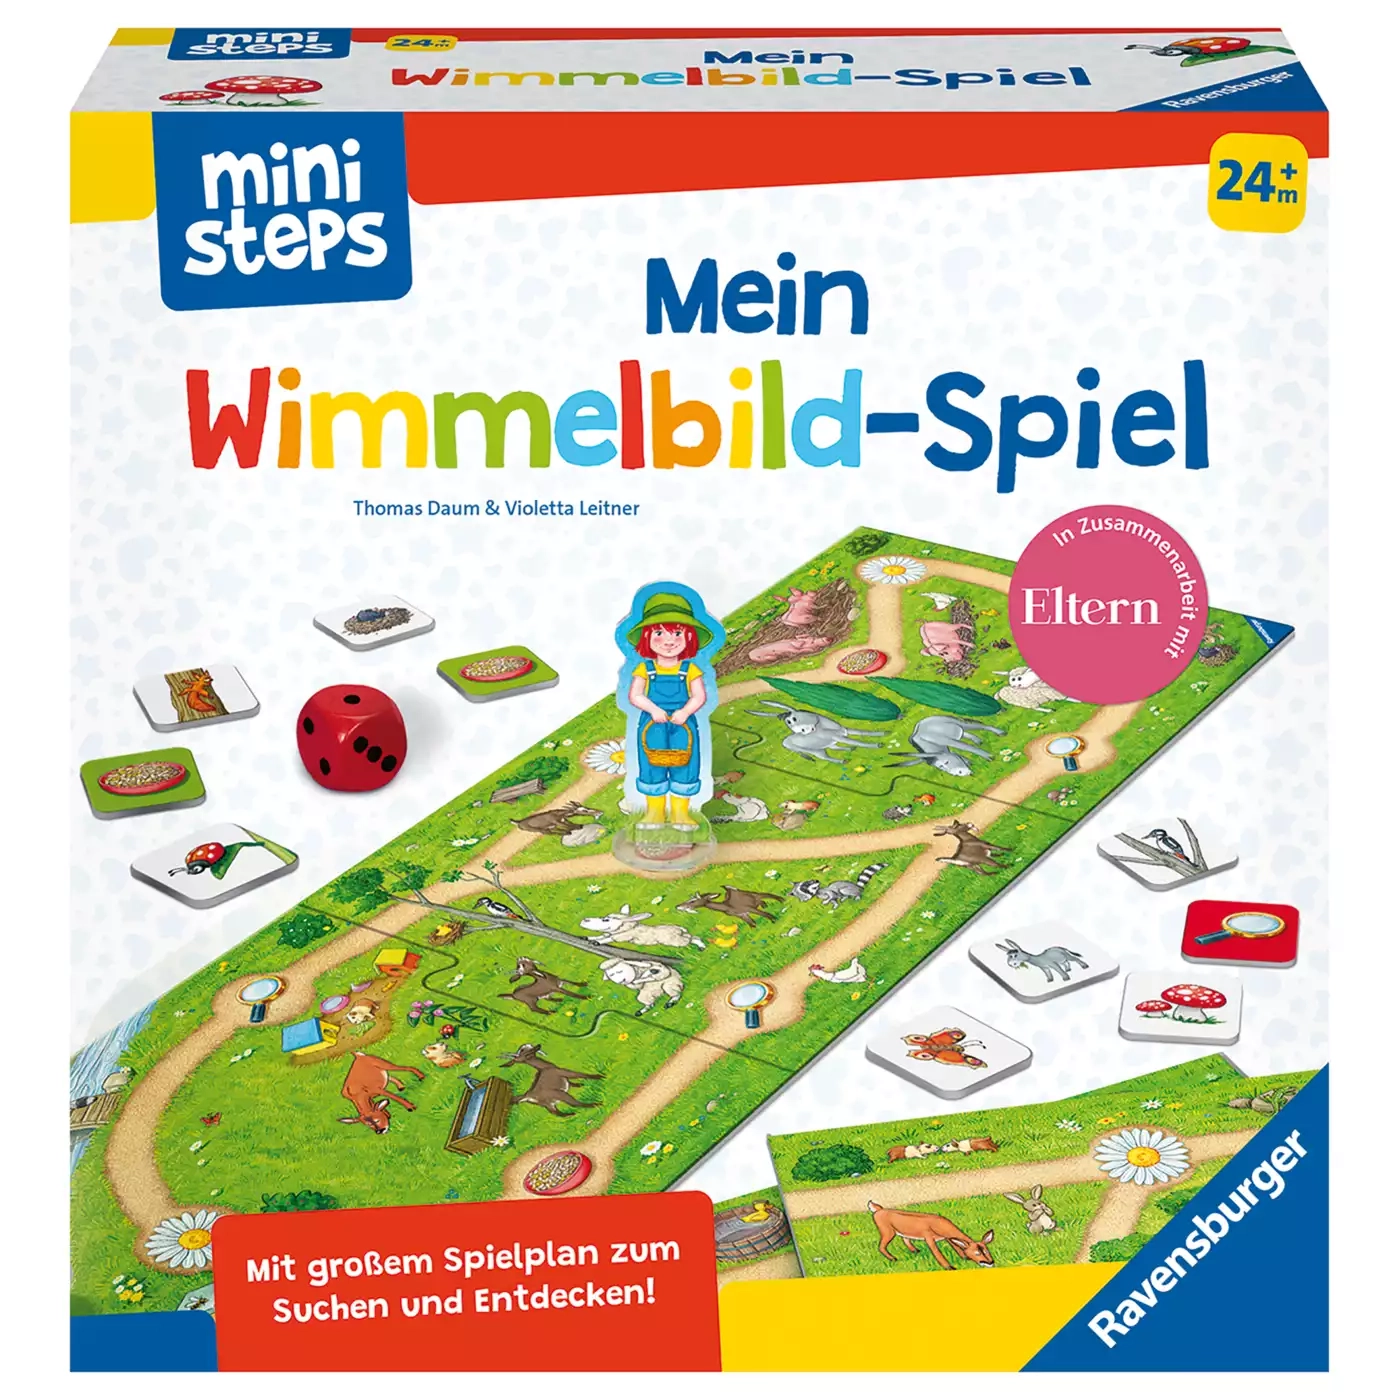 Mini Steps Mein Wimmelbild-Spiel Ravensburger 2000579698903 3